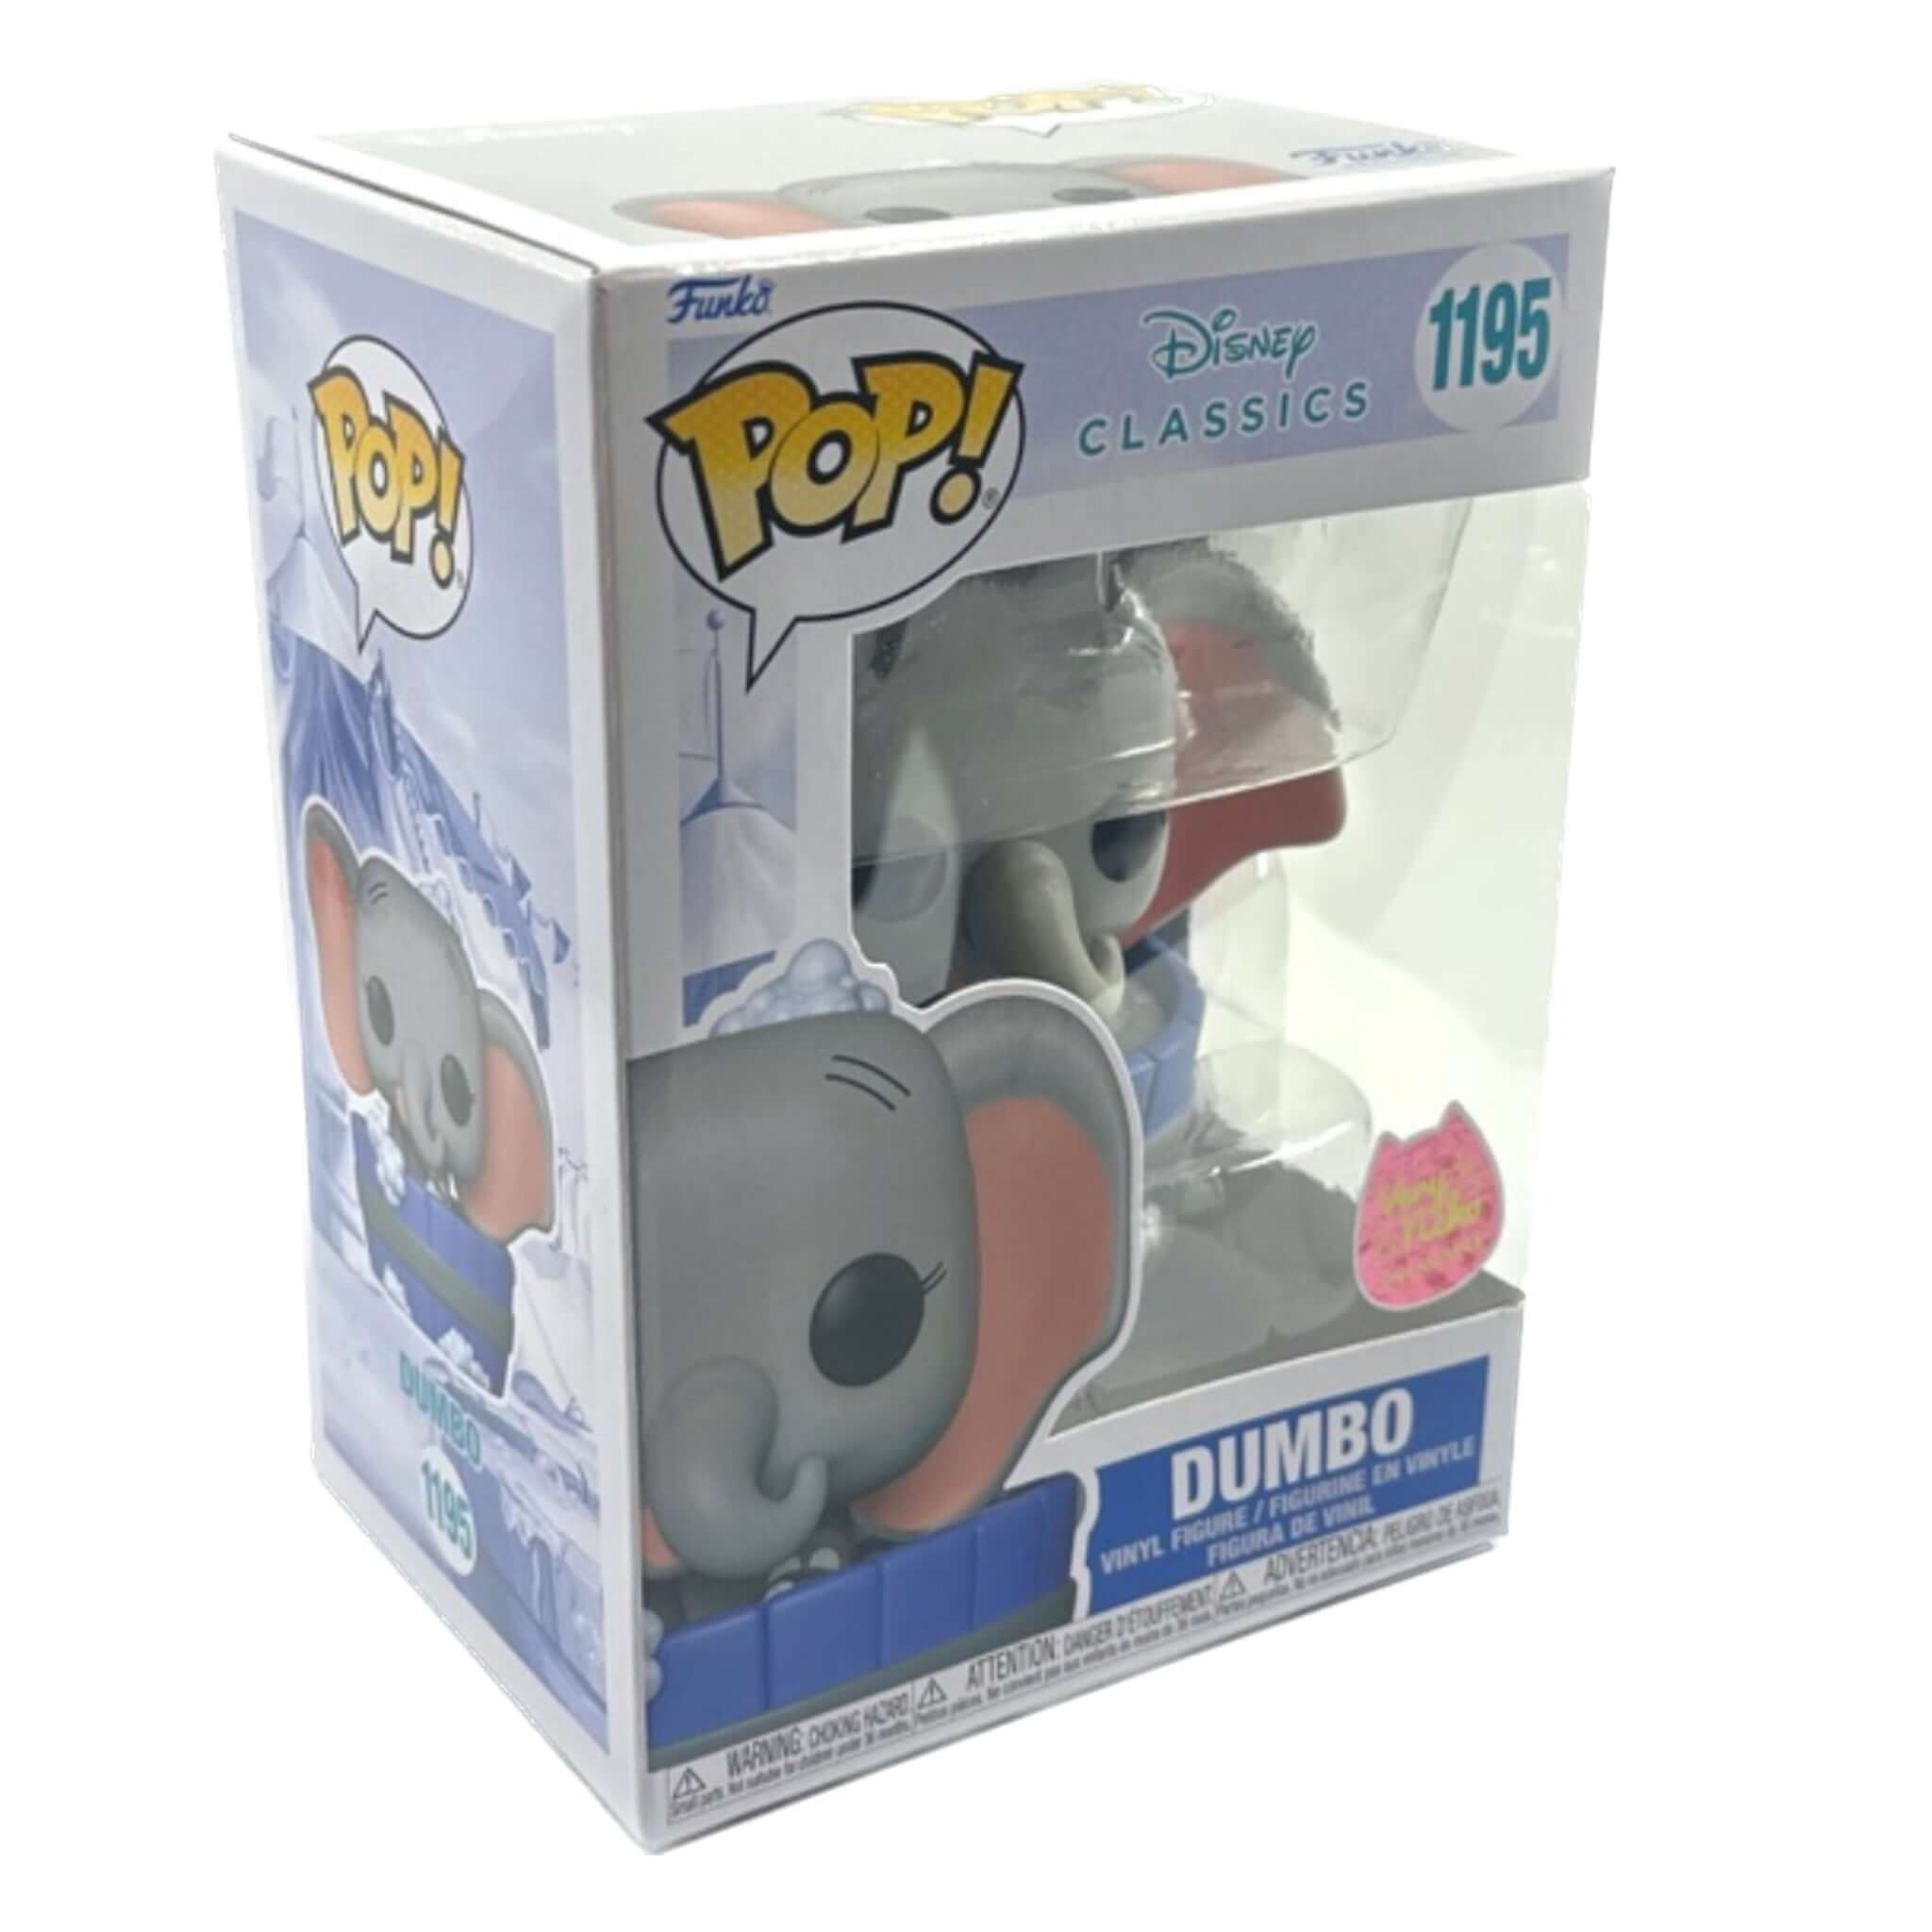 Funko EXCLUSIVE VERY Pop! Dumbo NEKO